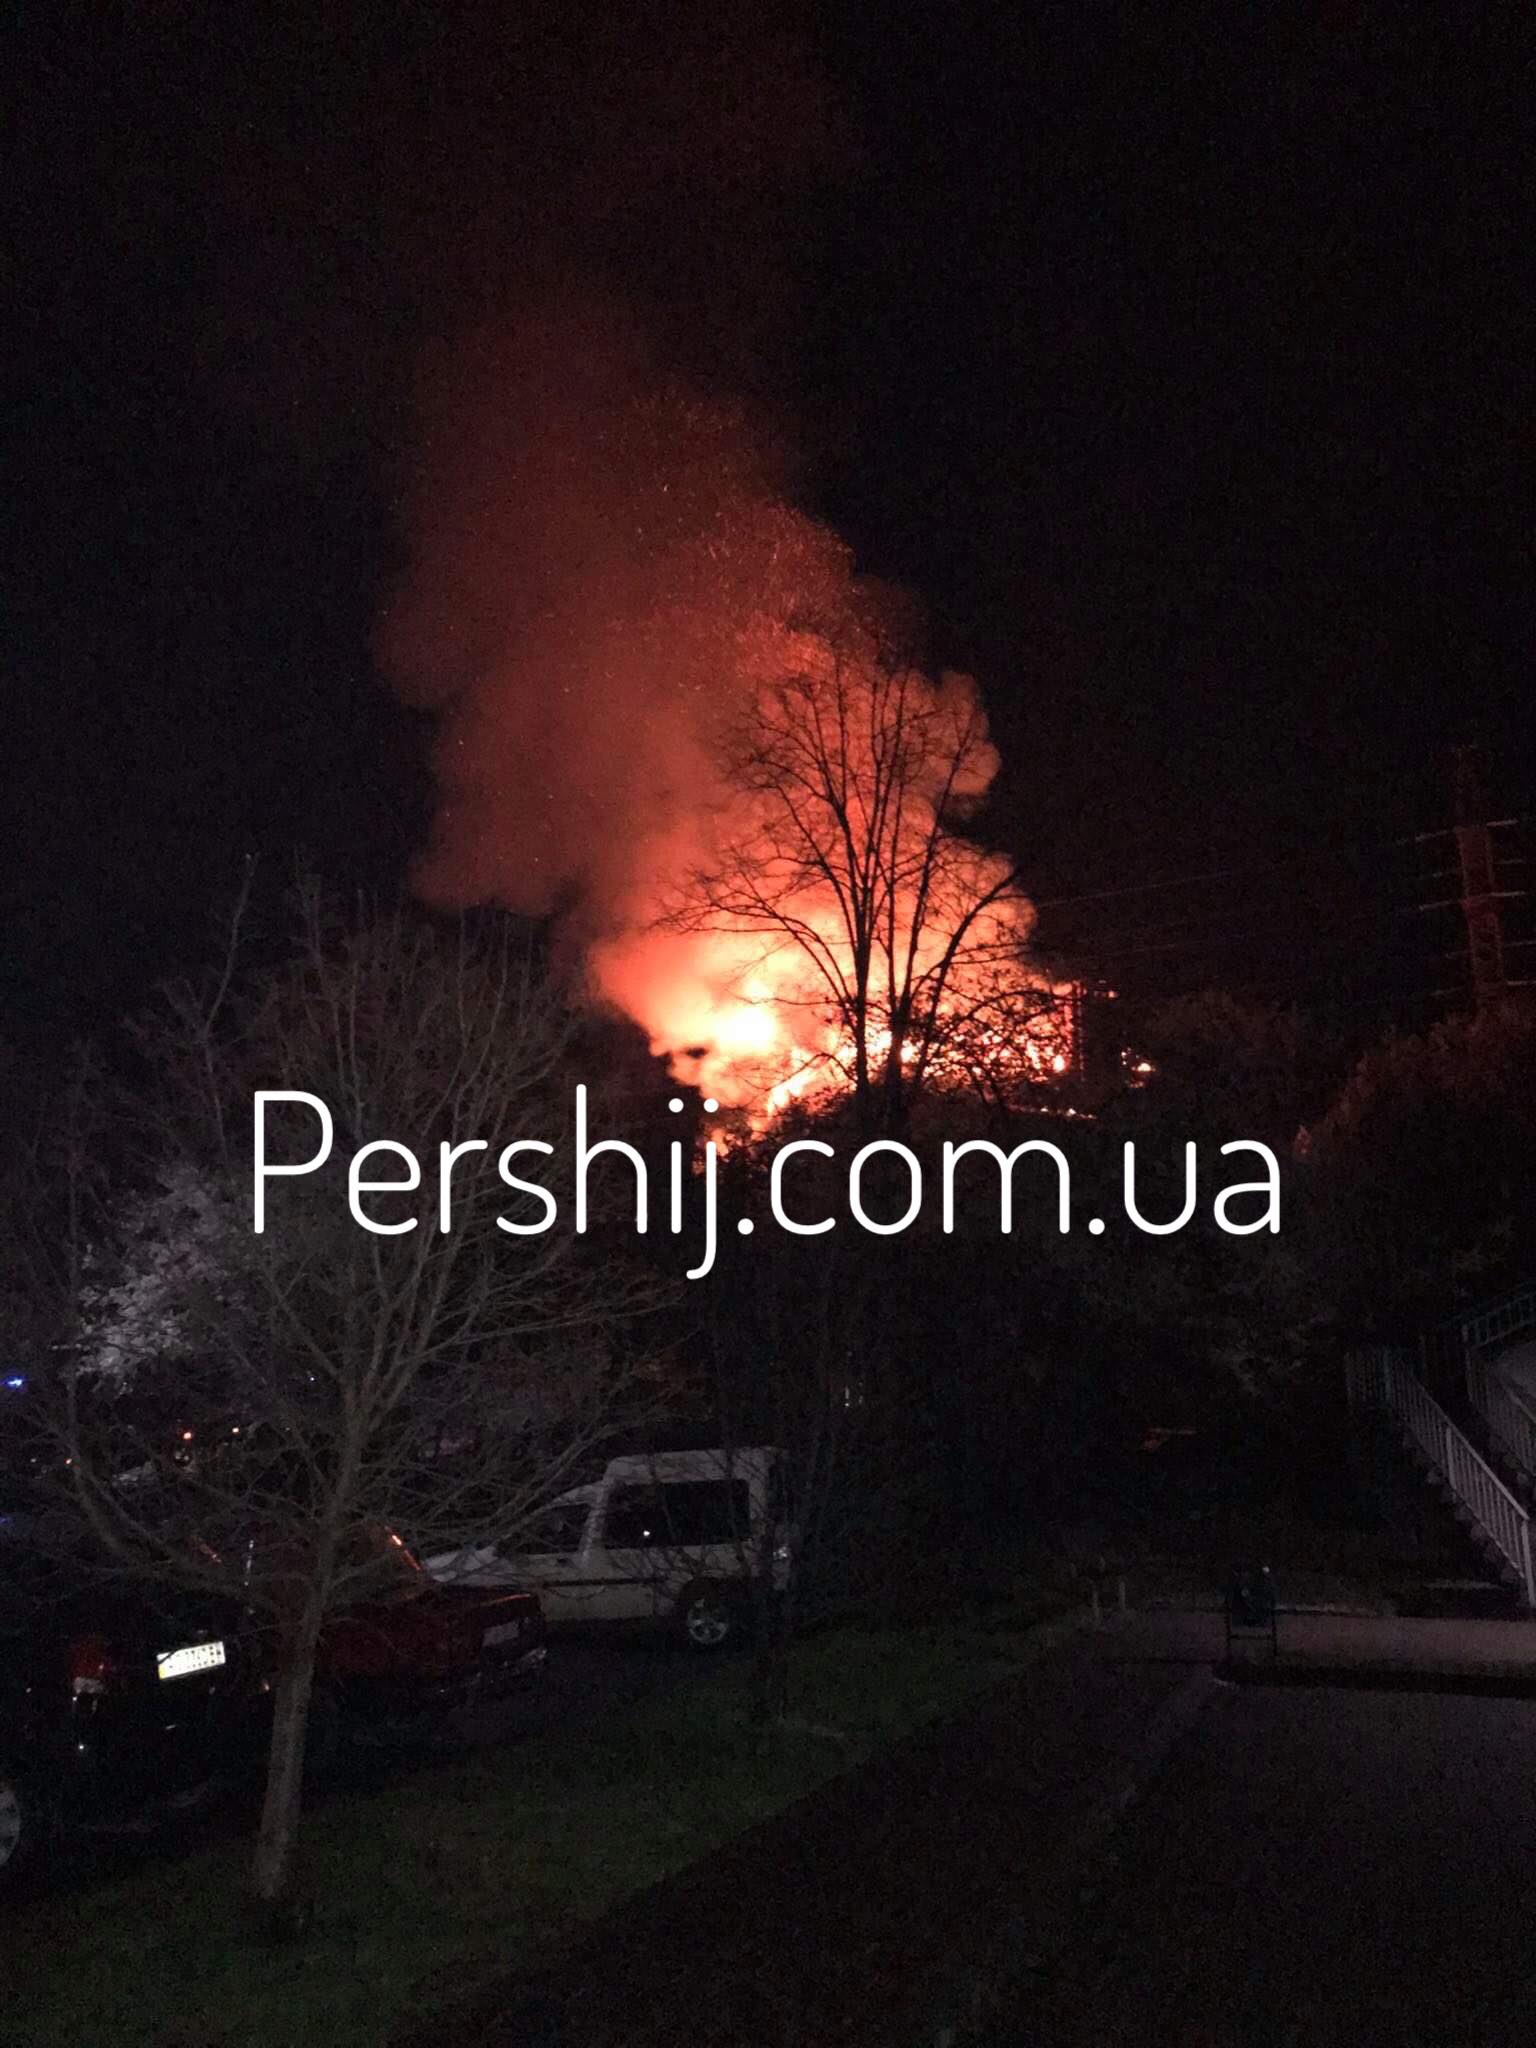 Нічна пожежа в Ужгороді: вогонь знищив будівлю за лічені хвилини (ФОТО, ВІДЕО)